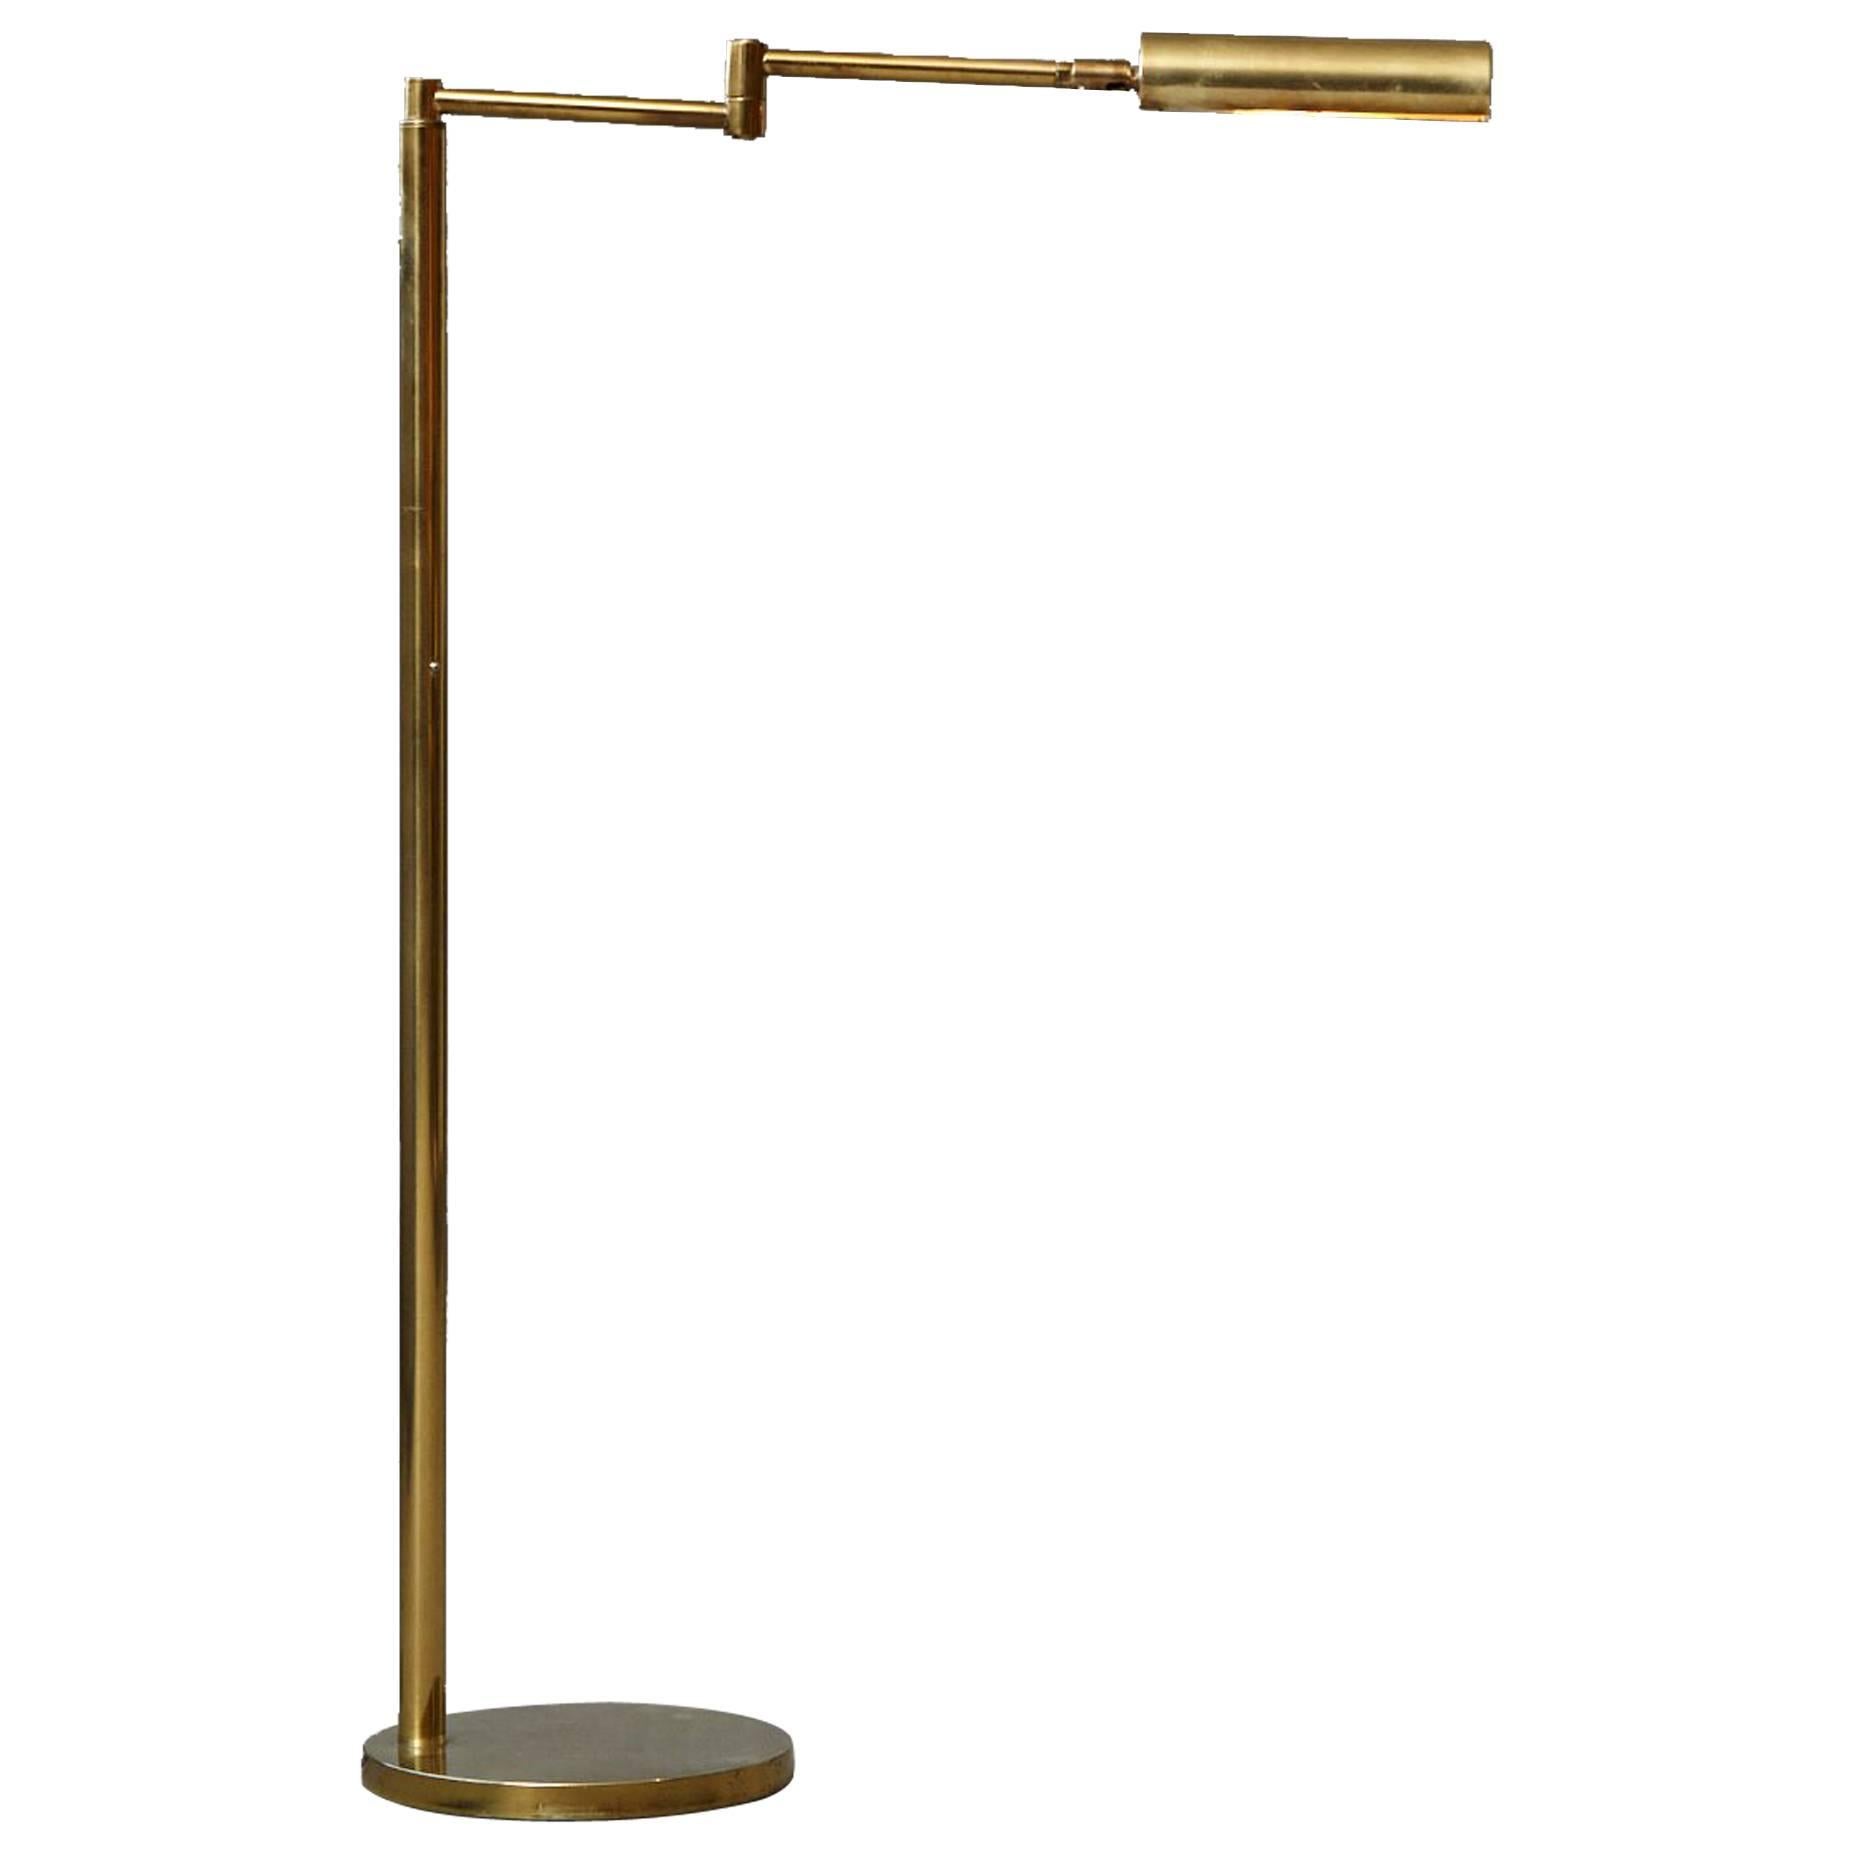 Koch & Lowy Height Adjustable Brass Swing Arm Floor Lamp